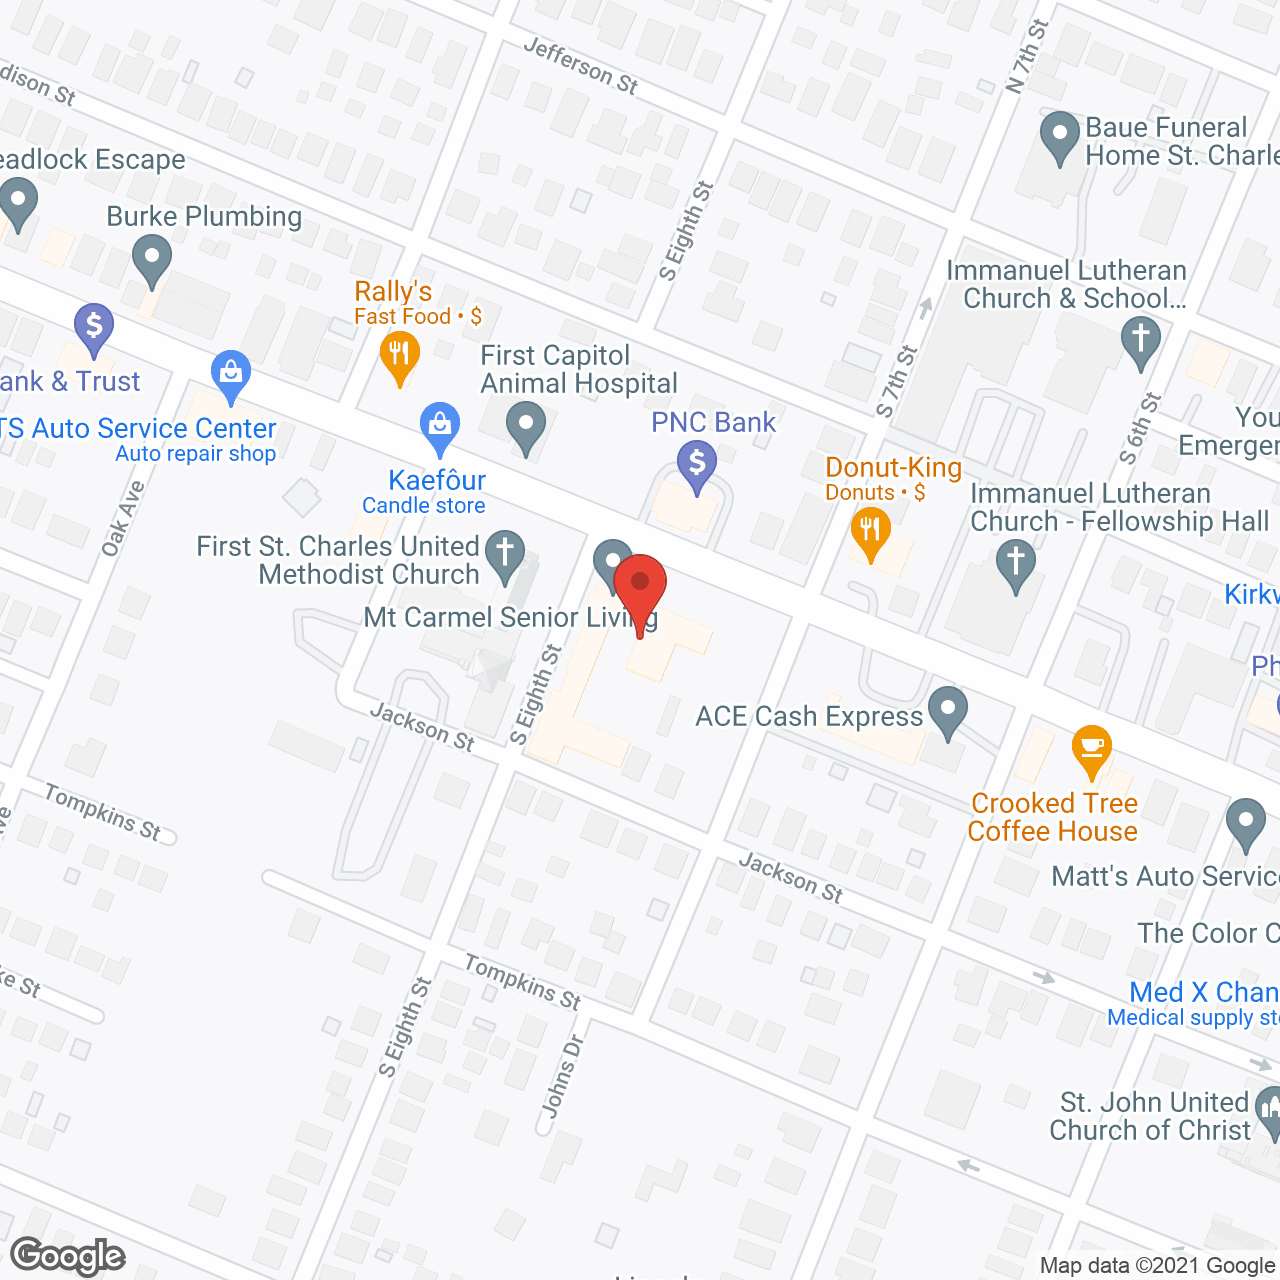 Mount Carmel Communities in google map